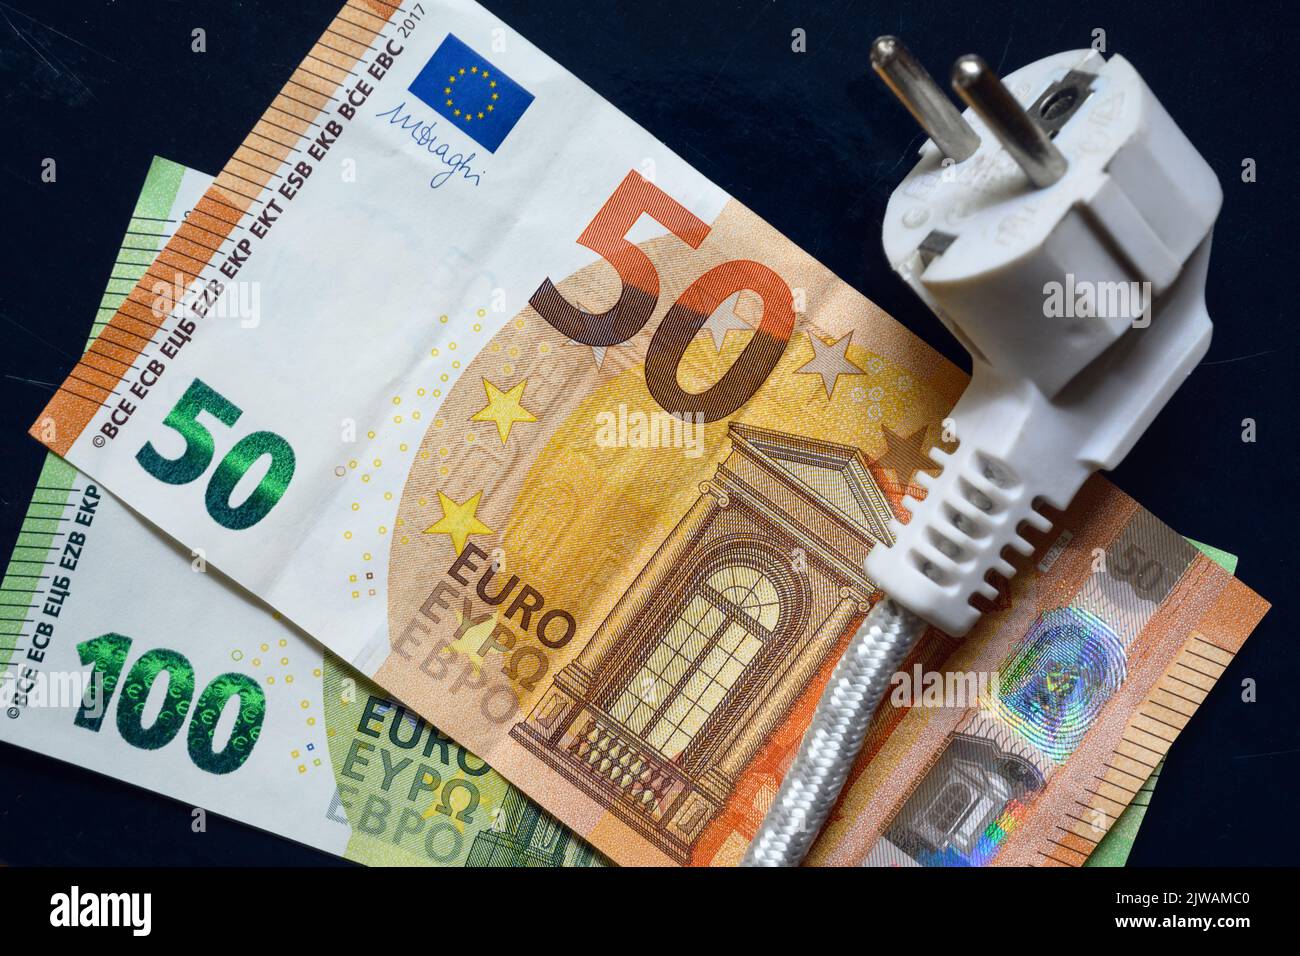 Spina di alimentazione e moneta in euro, cavo elettrico nazionale sulle banconote europee, vista dall'alto. Crisi energetica in Europa, prezzo dell'elettricità a casa costoso. Concetto Foto Stock